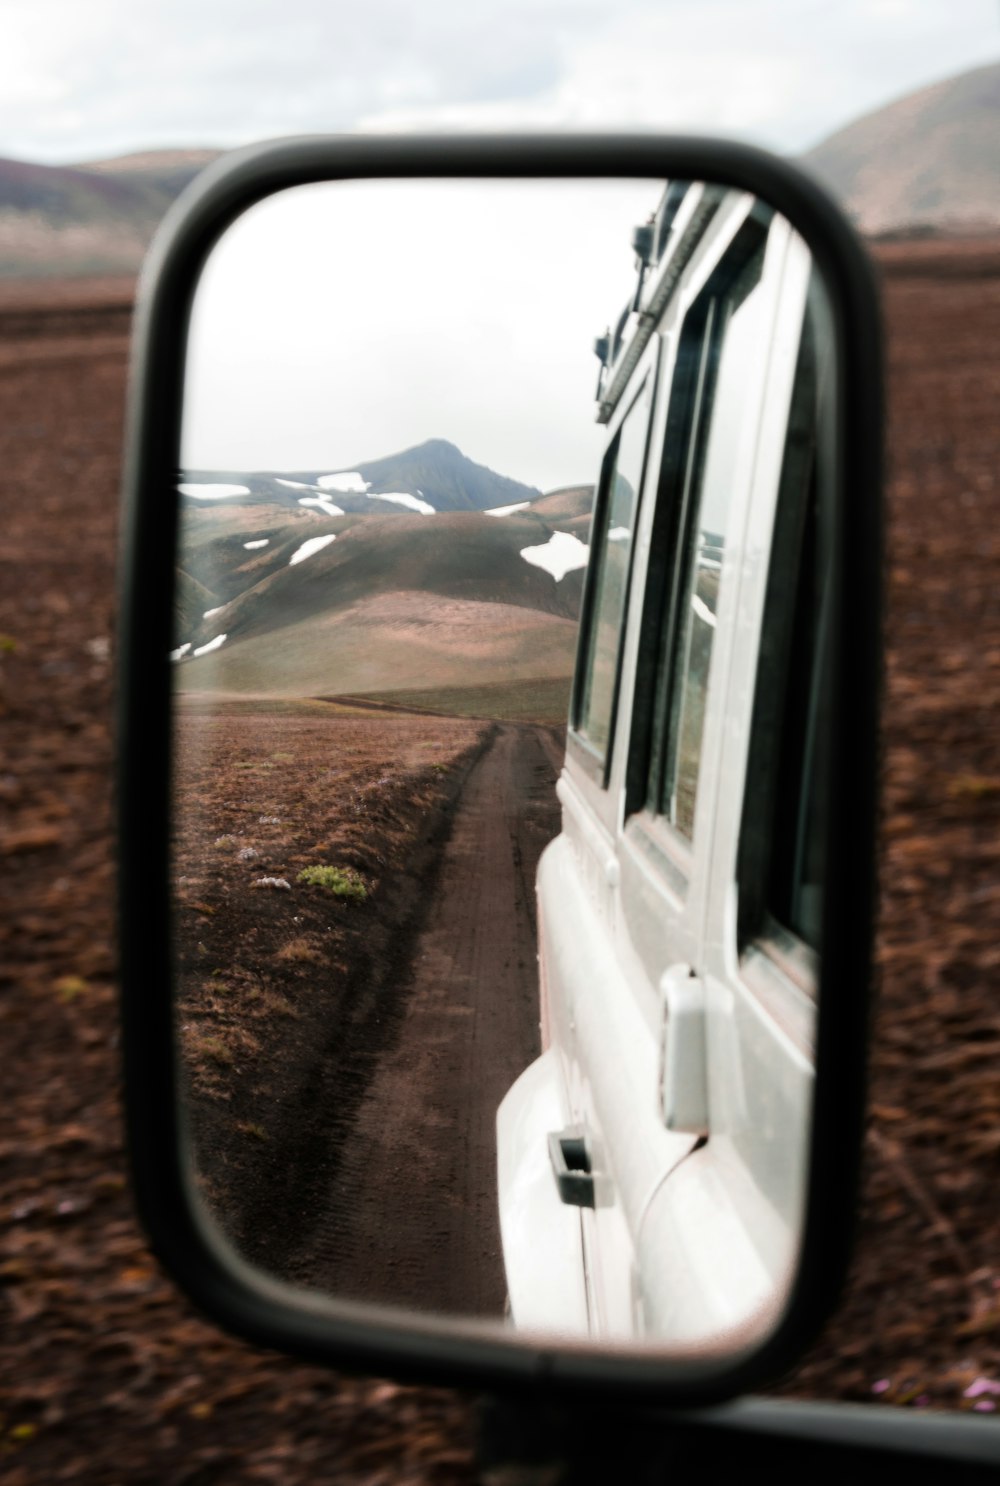 Cordillera vista desde el espejo retrovisor del vehículo